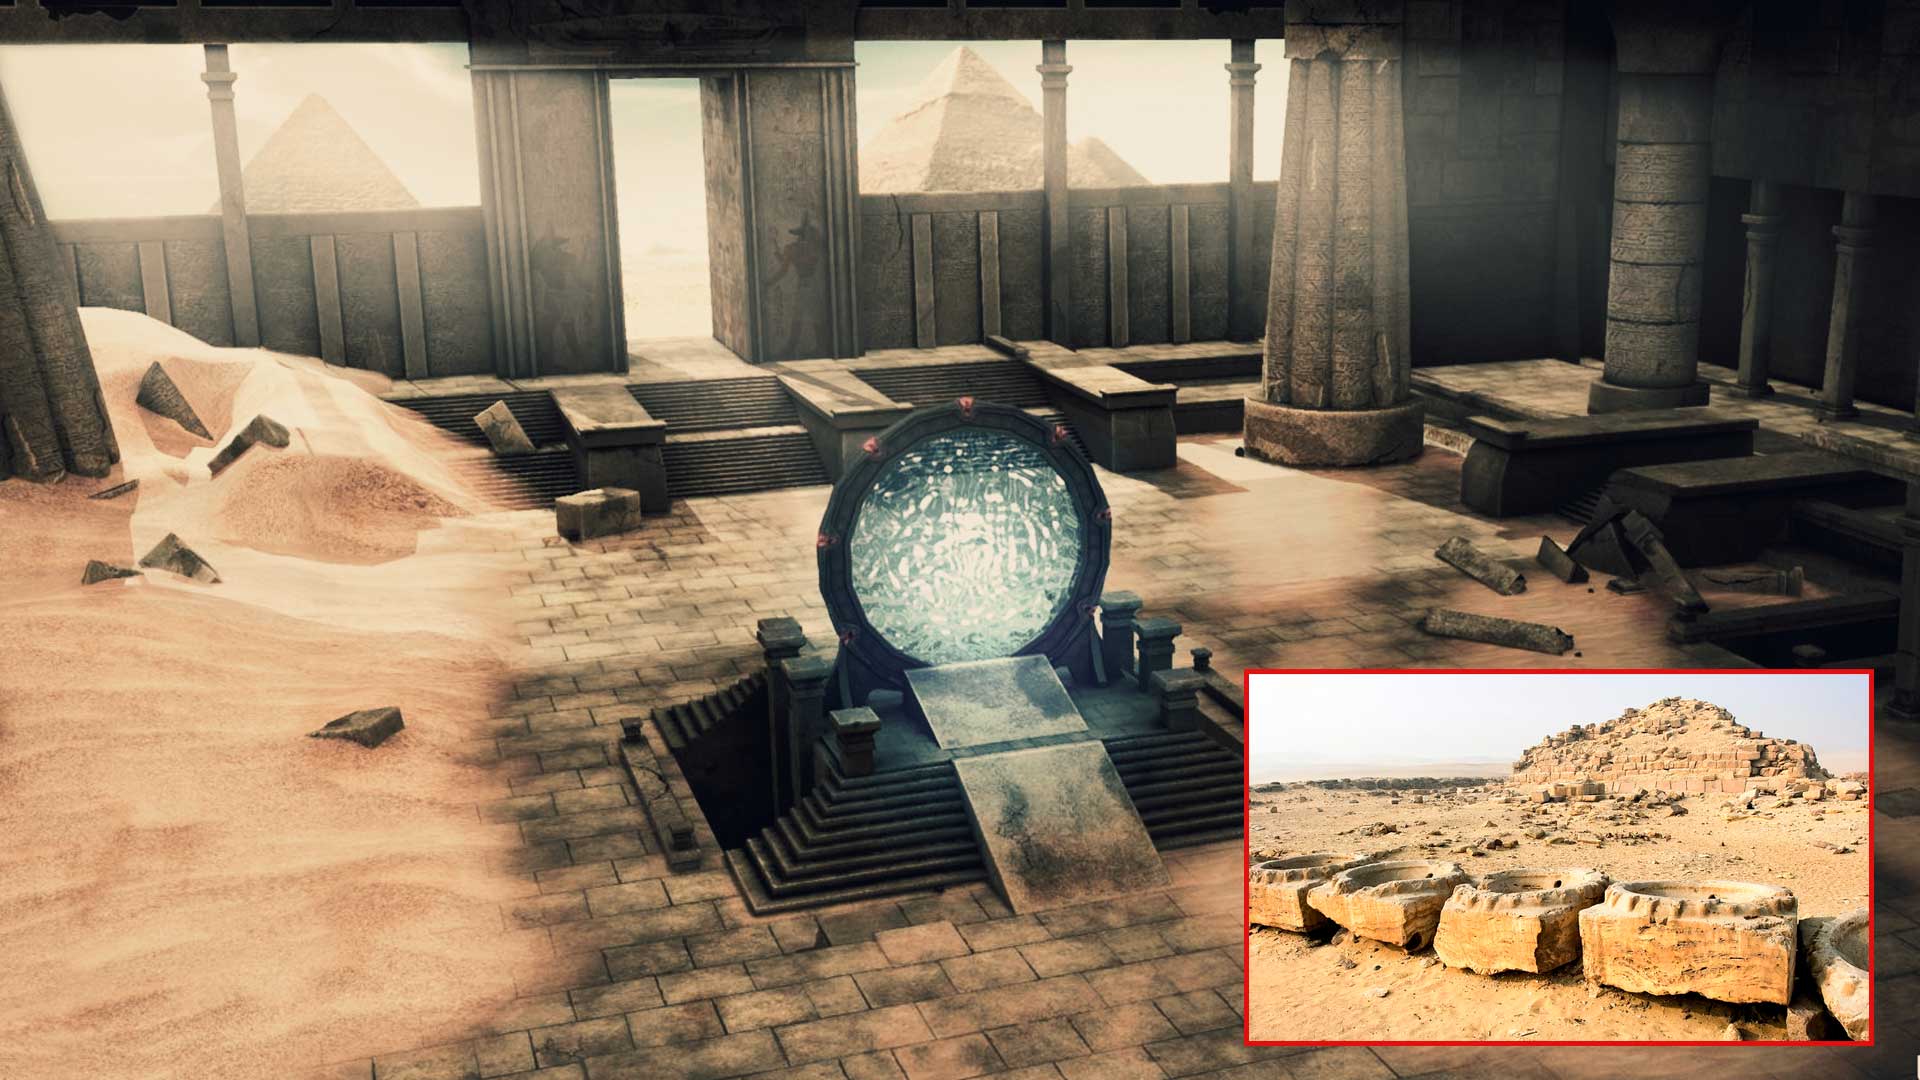 El misterio del Templo Solar de Abu Gurab y su “Puerta Estelar” sale a la luz